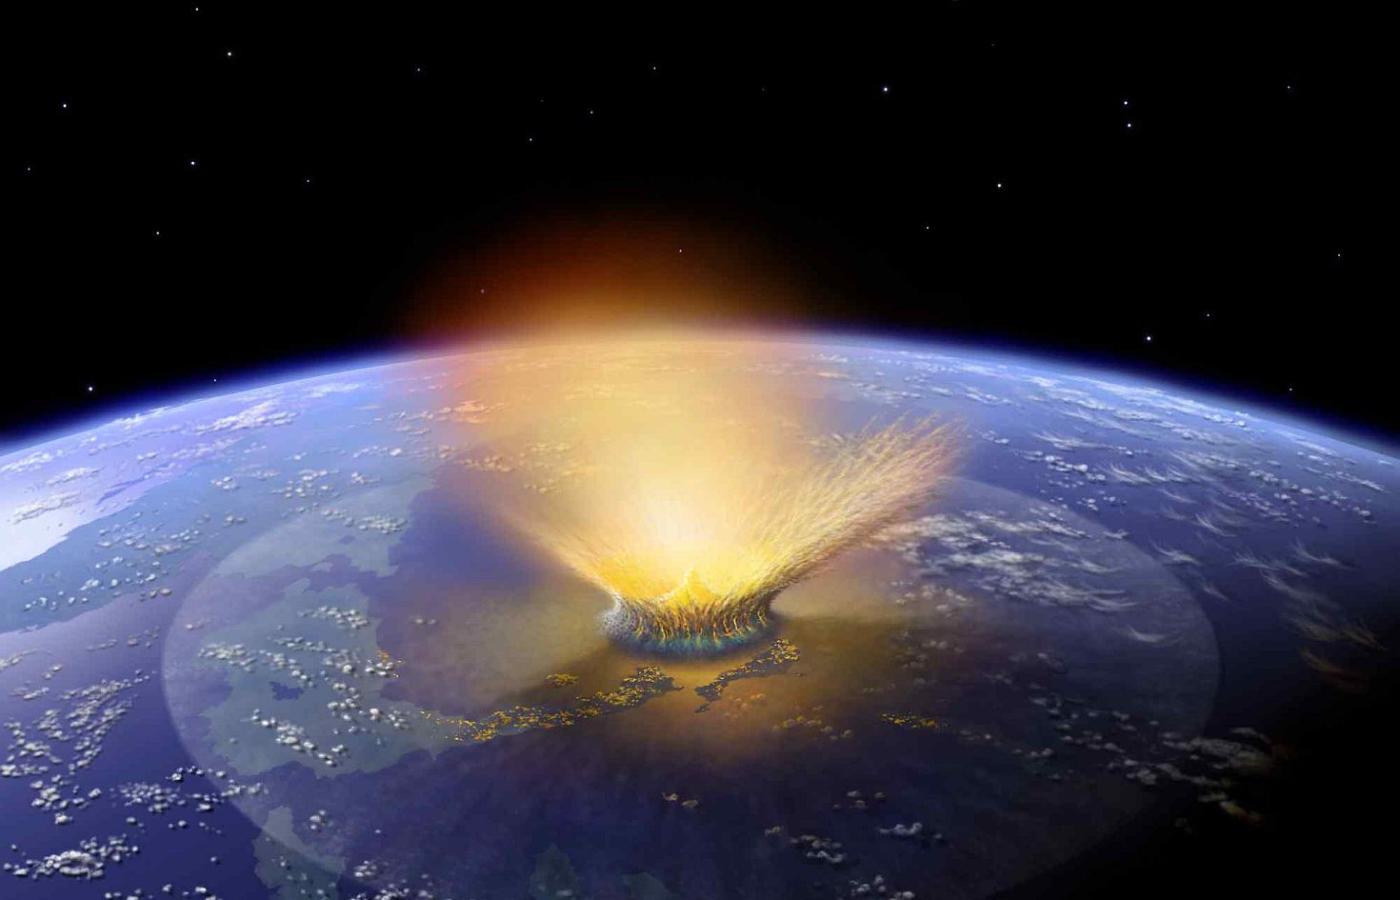 Być może życie na Ziemię przyniosły komety i meteoroidy bombardujące z ogromną intensywnością powierzchnię naszej planety niedługo po jej uformowaniu się.